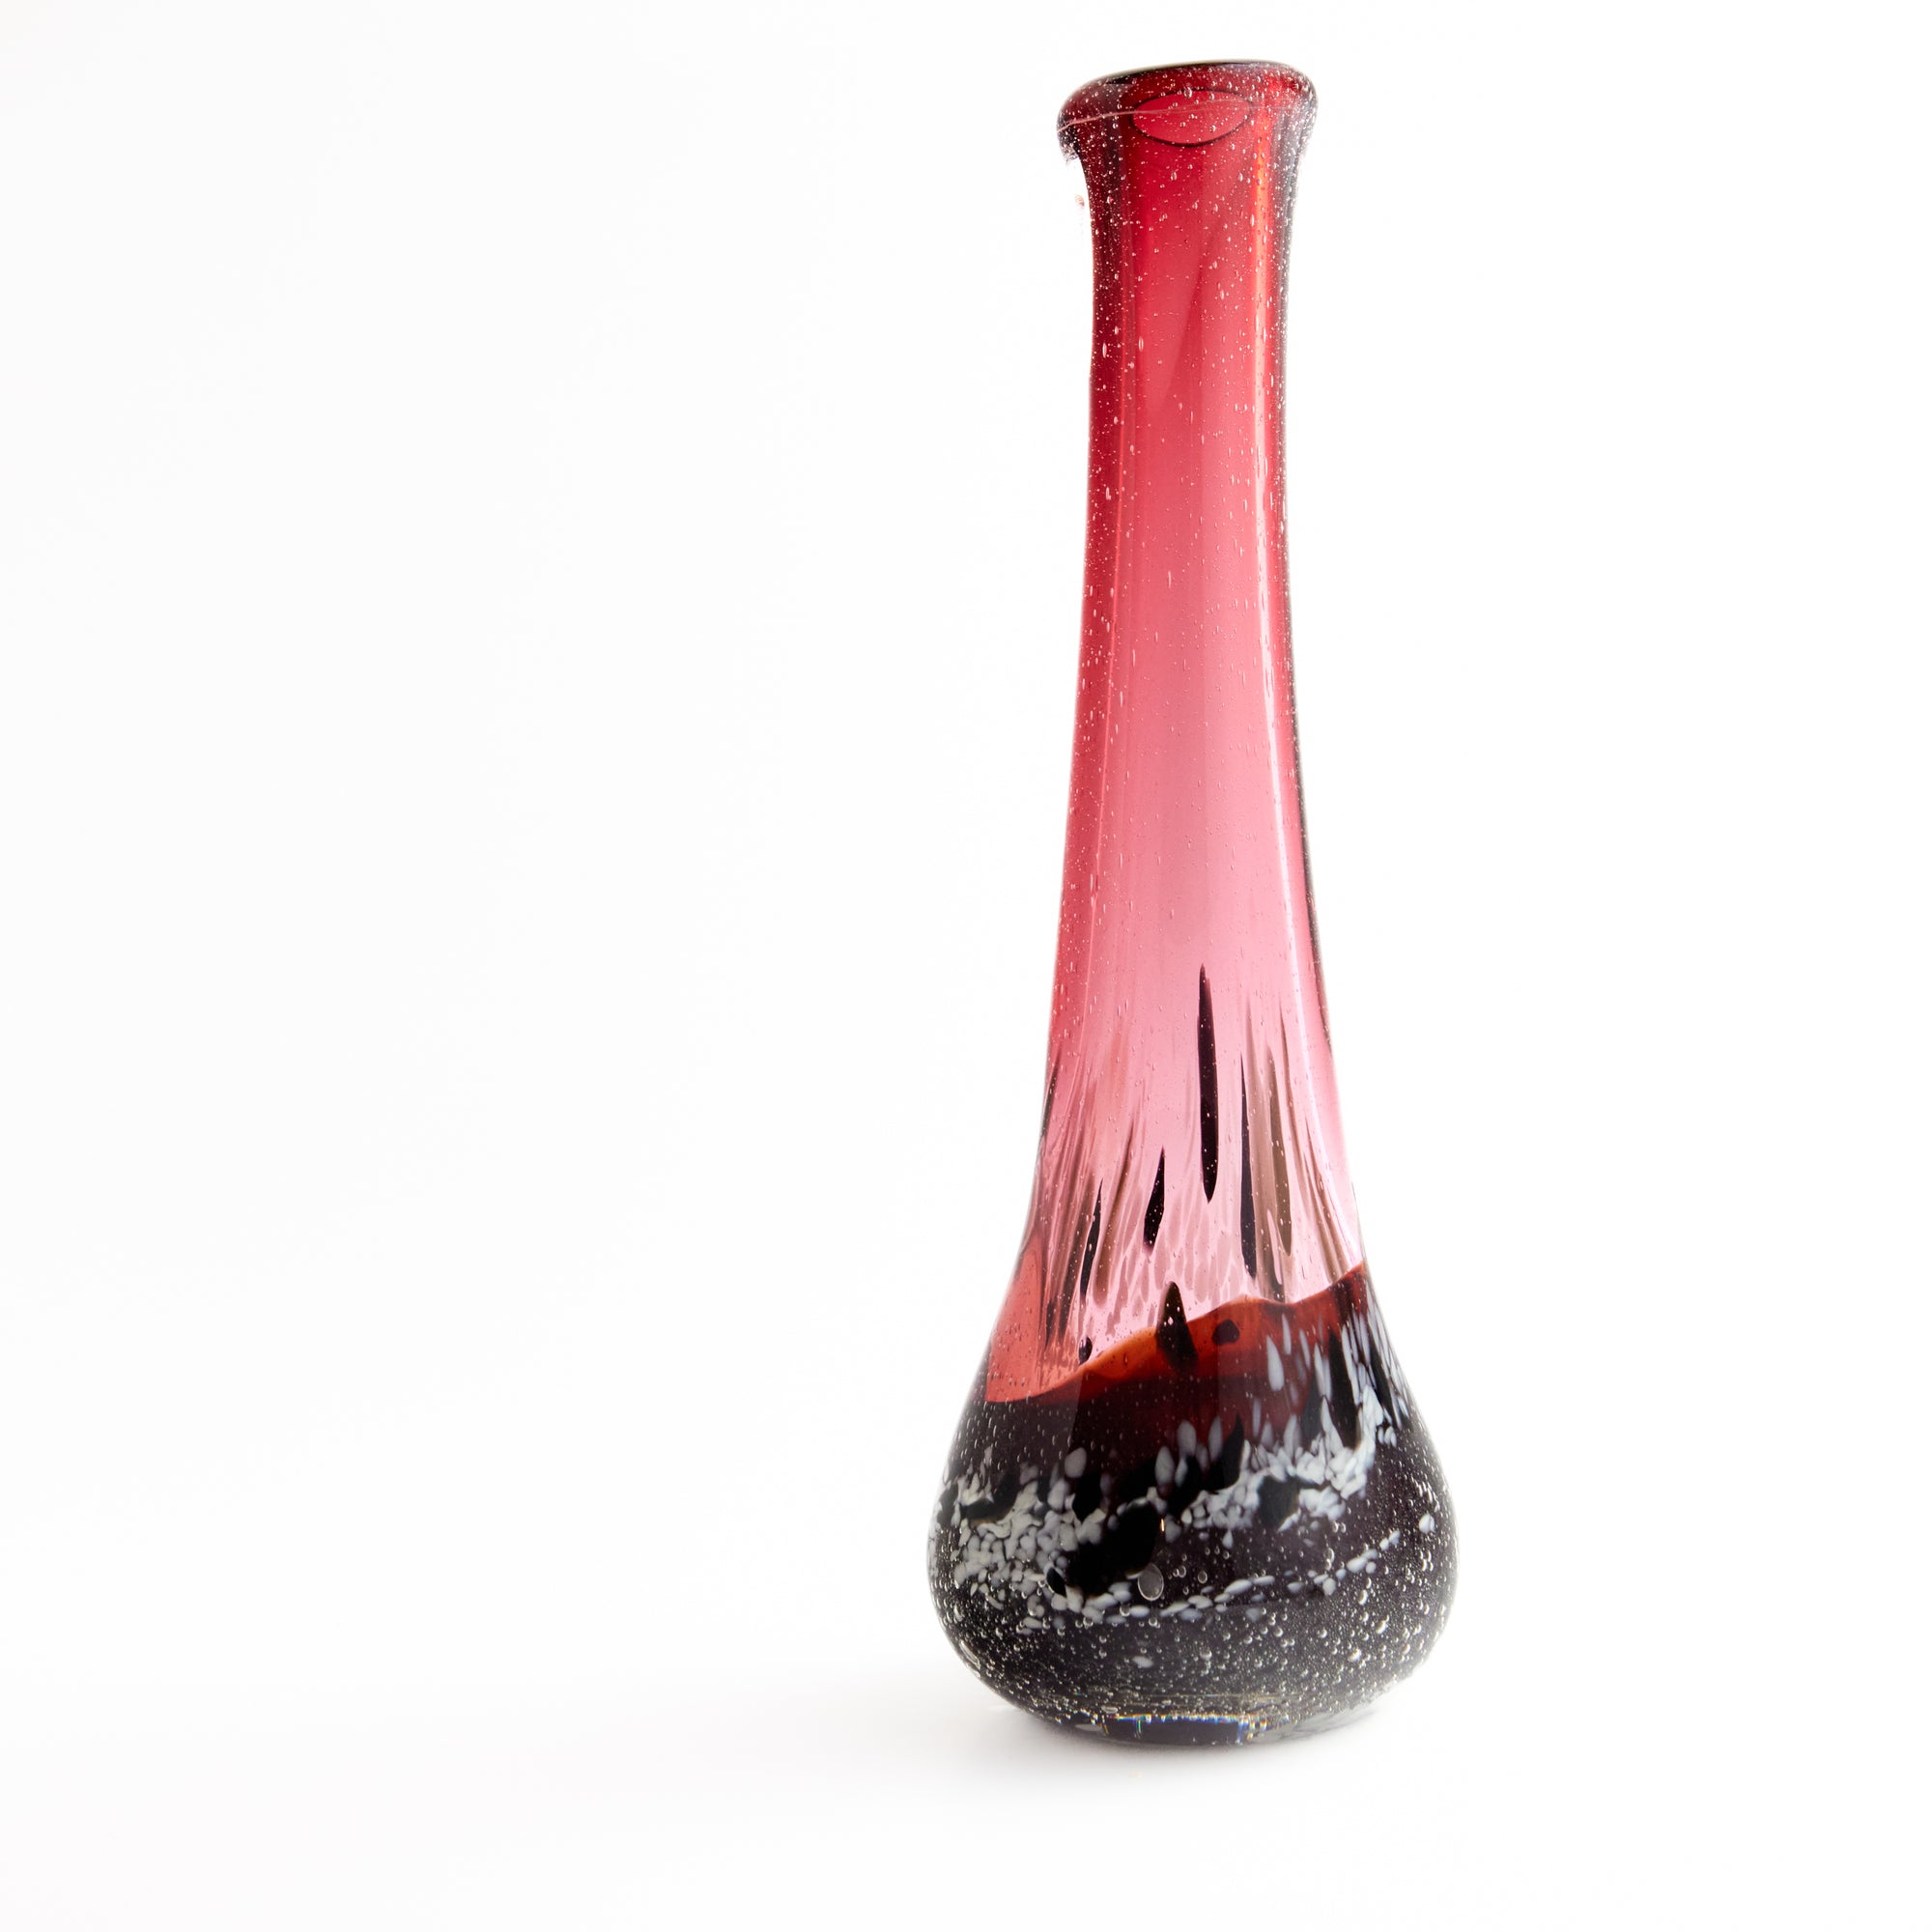 Emma Lashmar Fisherman's Warning XL Silhouette Vase